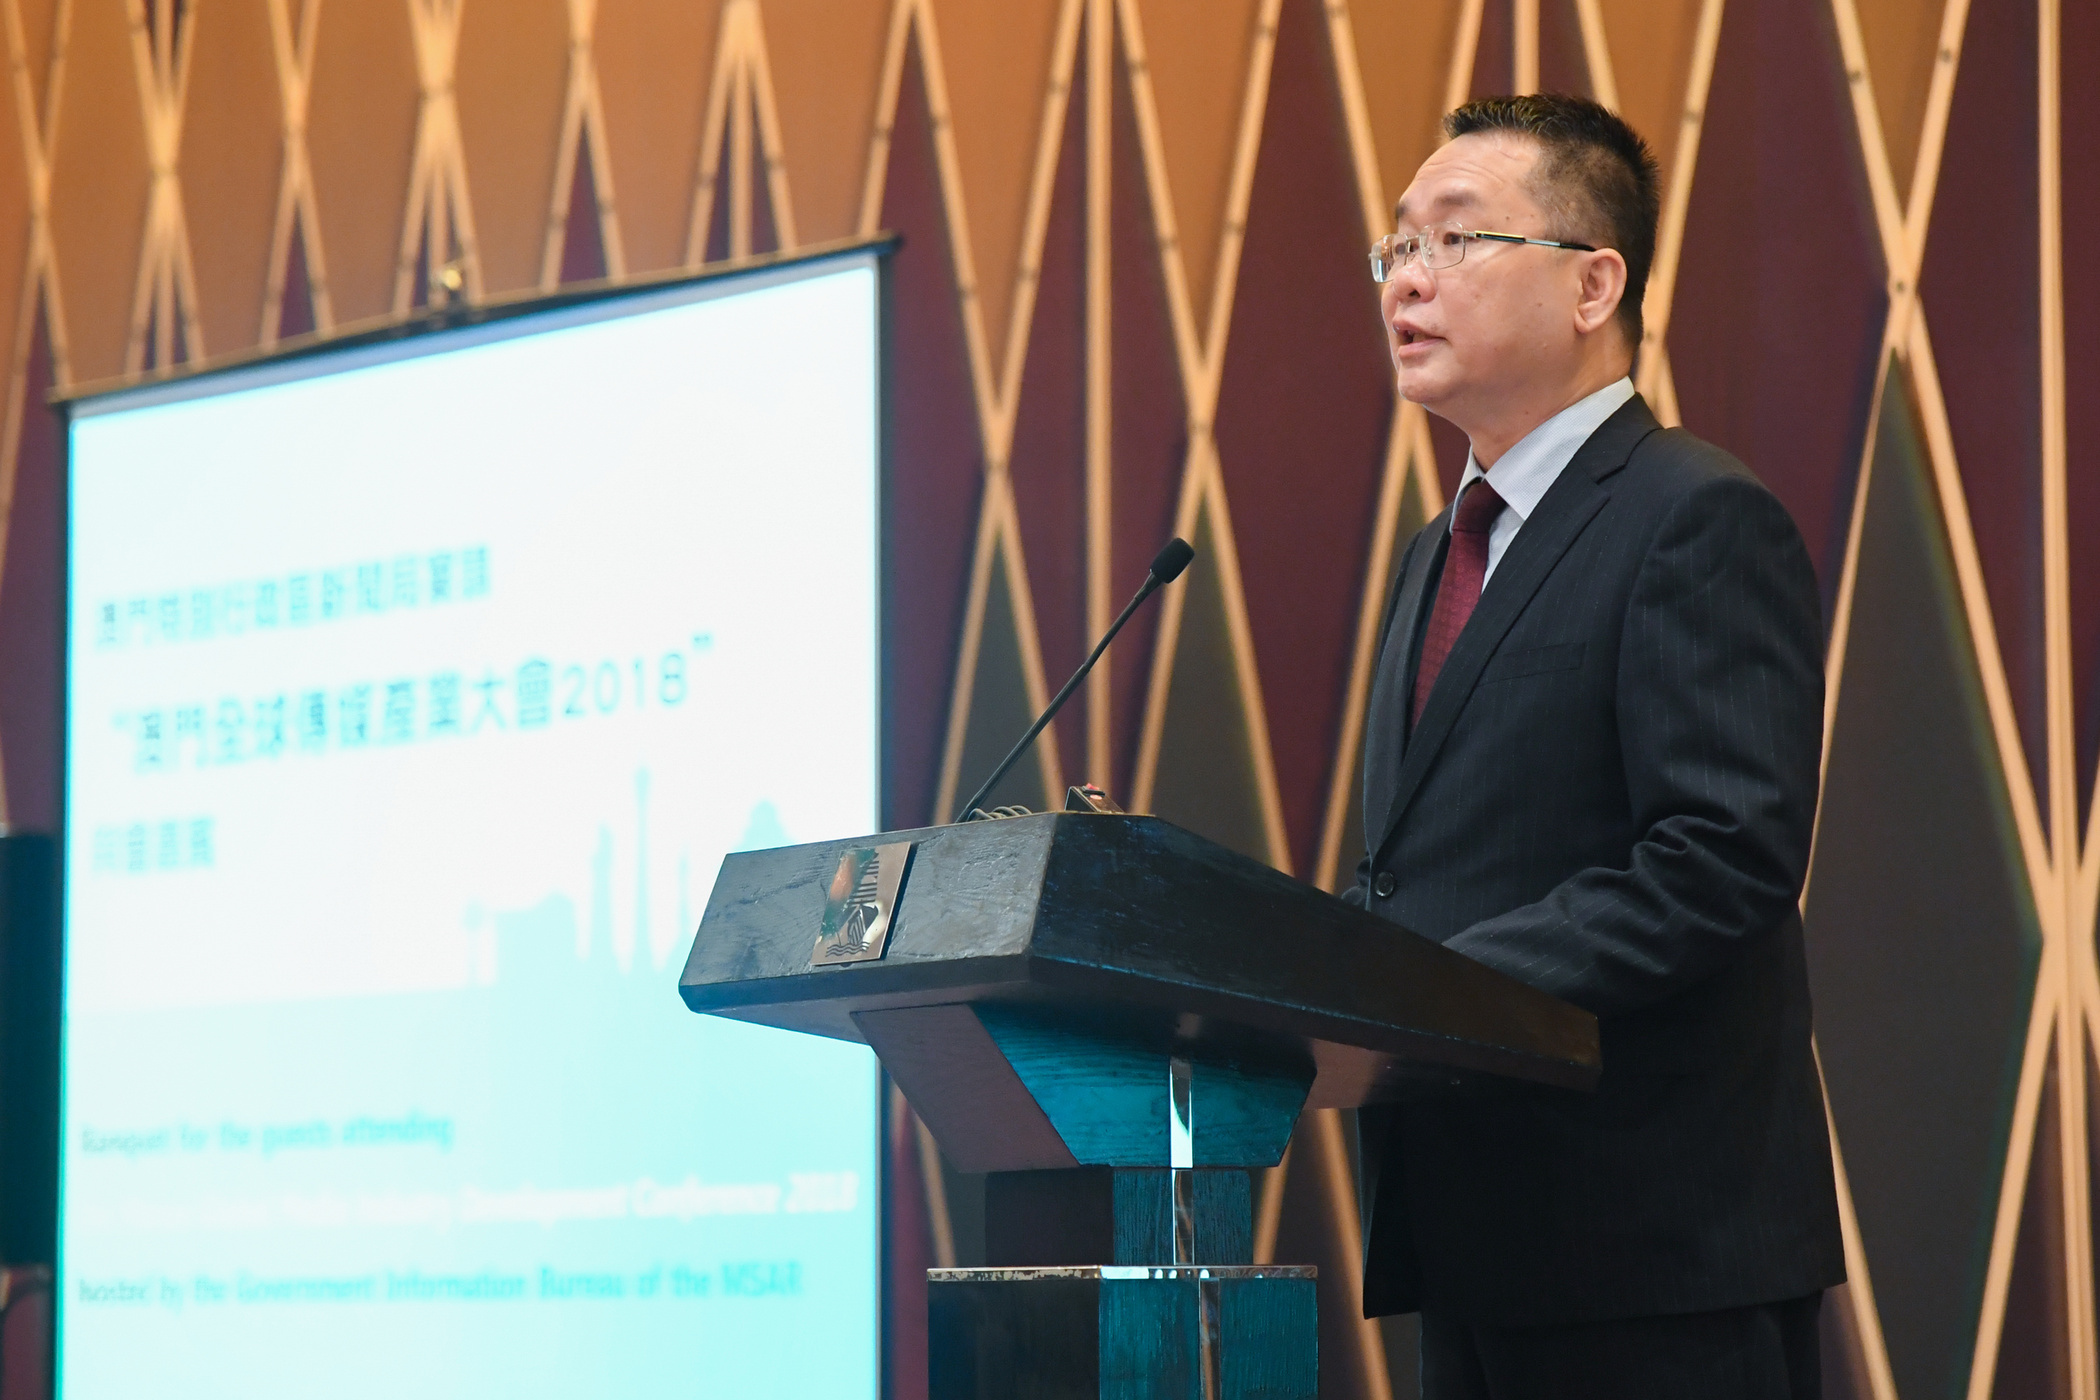 Macau conference discuss media development